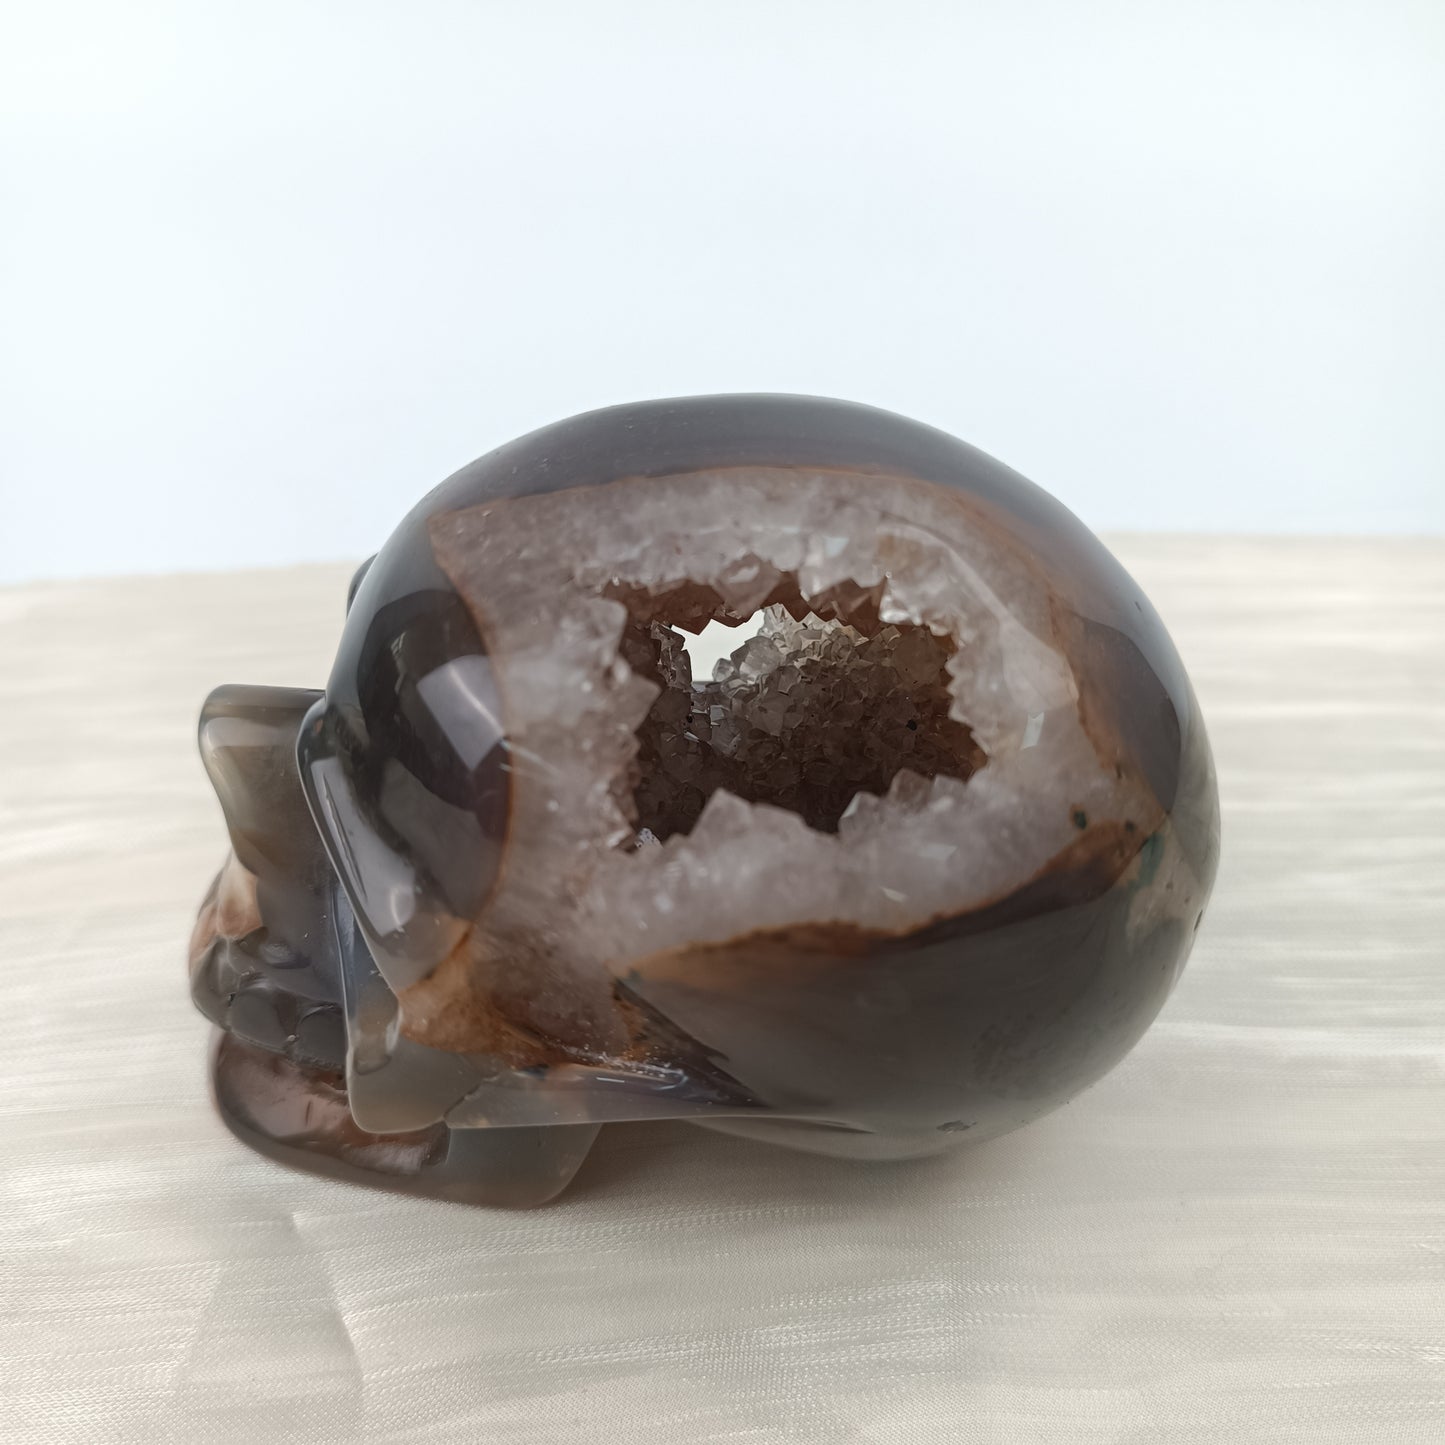 Agate skull-055